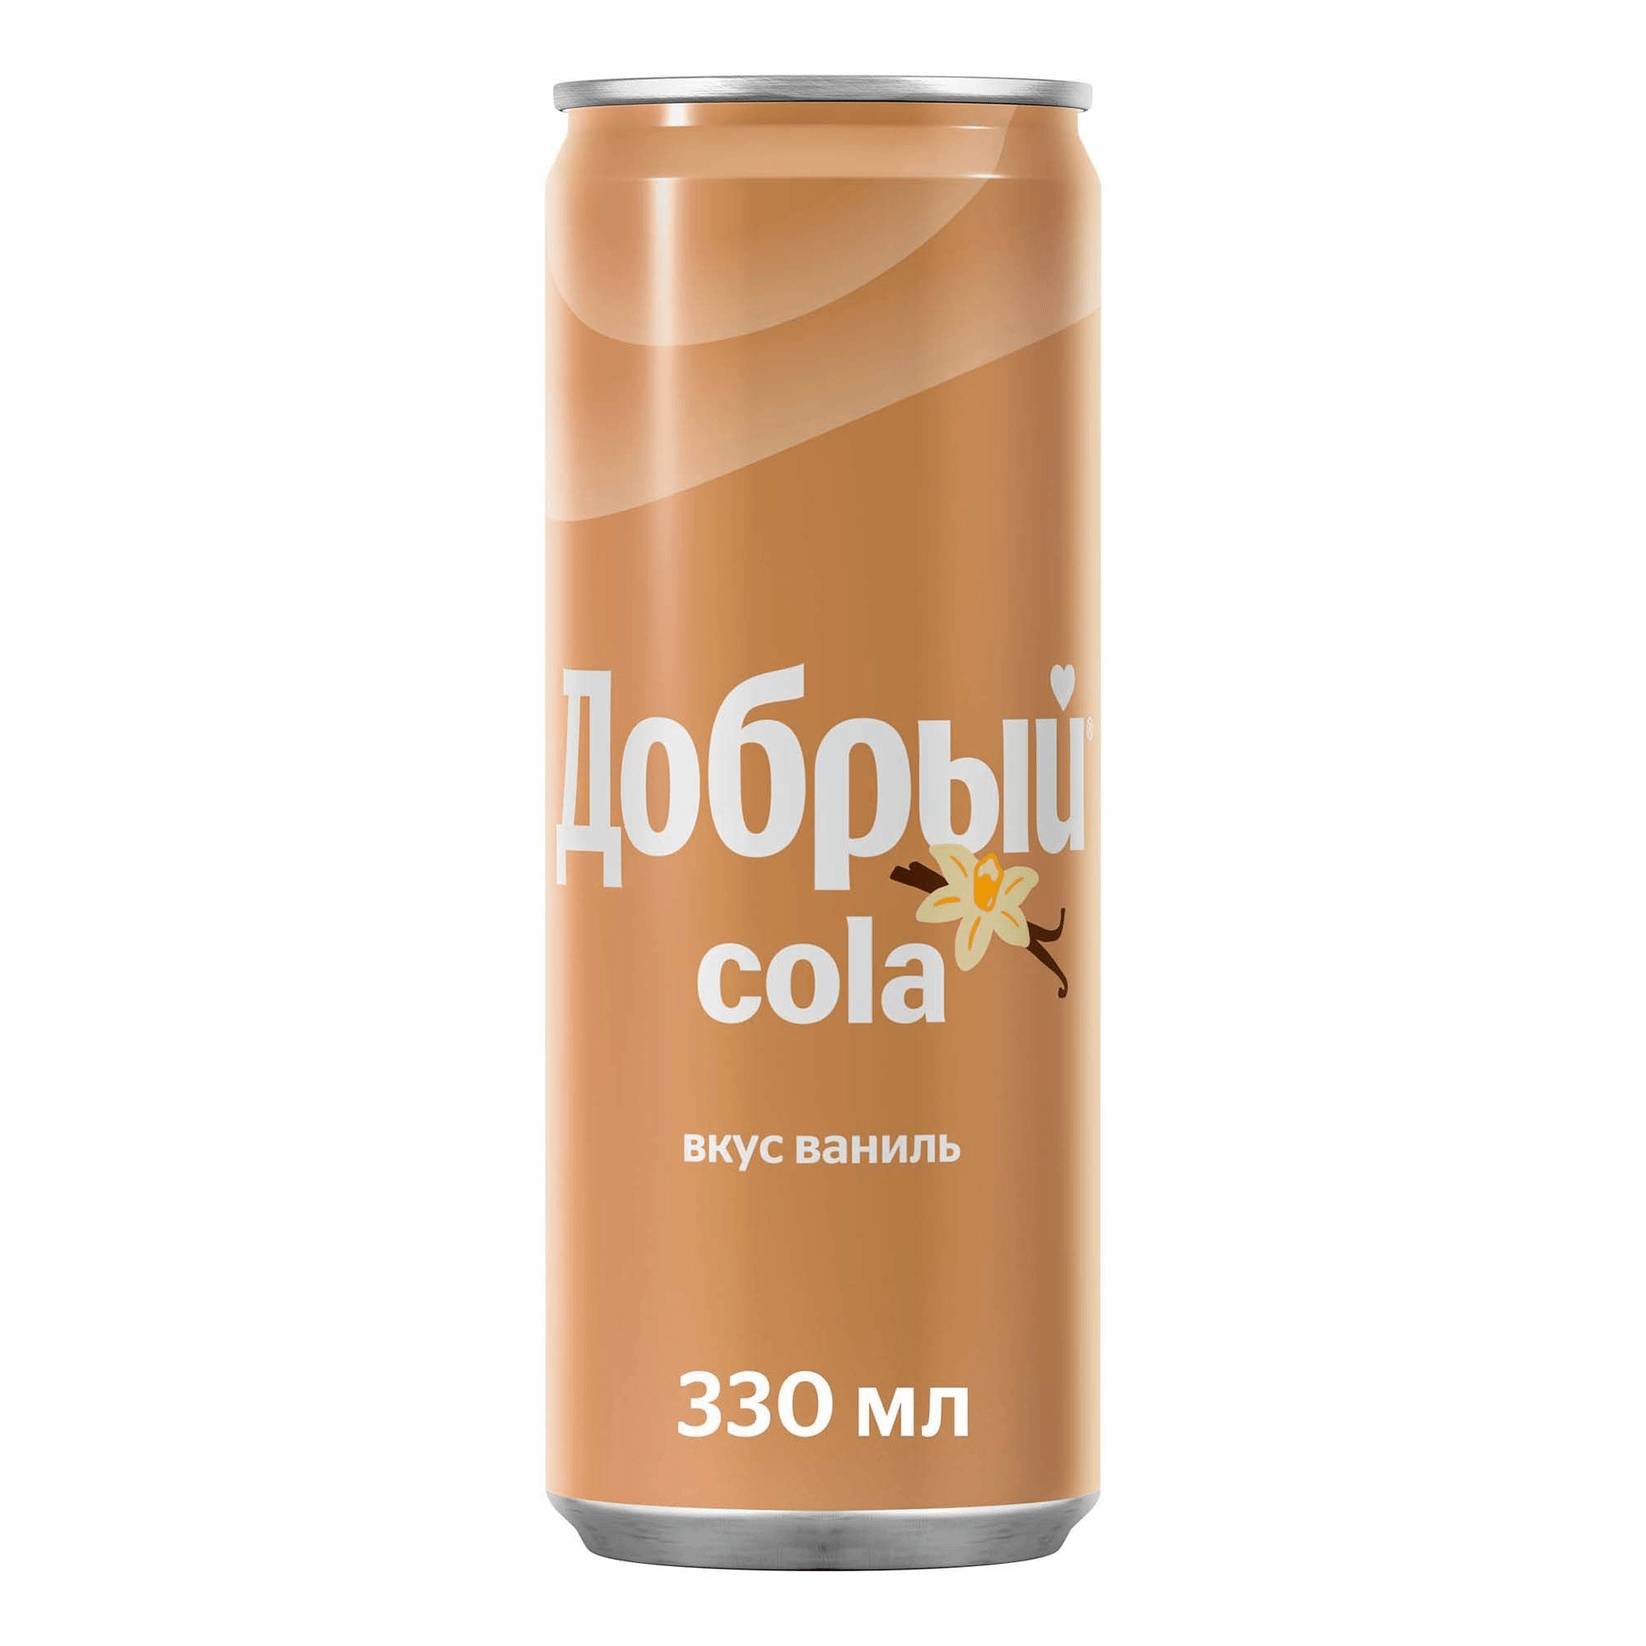 Напиток Добрый Cola ваниль 0,33 л напиток волчок cola 0 33 литра газ ж б 24 шт в уп